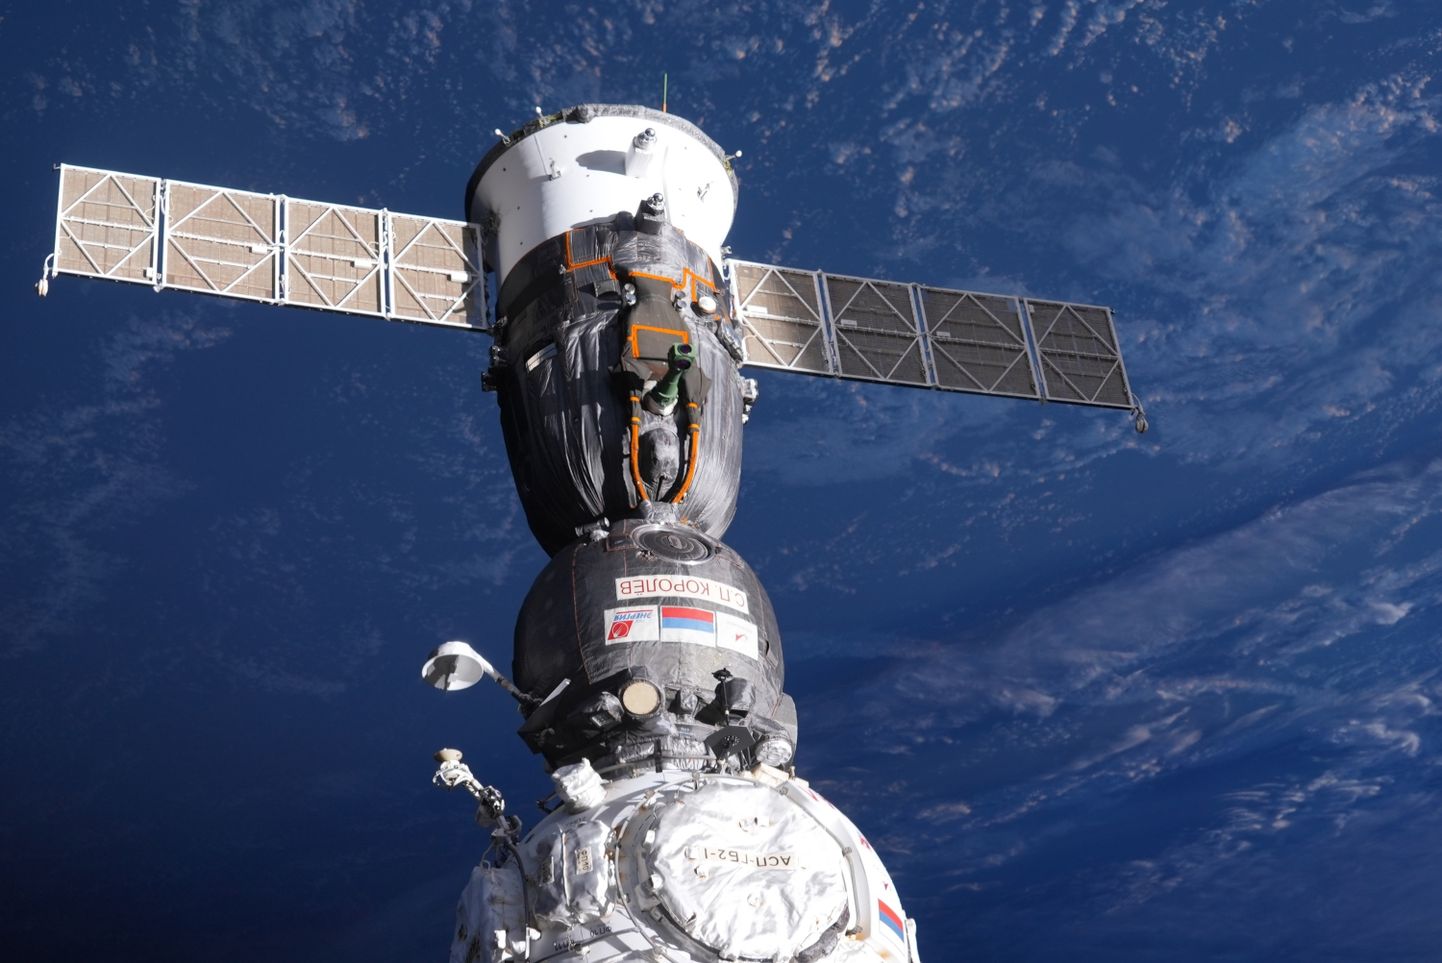 Sellel Venemaa kosmonaudi Sergei Korsakovi tehtud fotol on näha rahvusvahelise kosmosejaama (ISS) Sojuzi kapsel. Vene kosmosekorporatsioon Roscosmos ütles kolmapäeval, et käivitab uue kosmoselaeva, et viia osa rahvusvahelise kosmosejaama meeskonnast pärast kapsli vigastamist ja jahutusvedeliku lekke teket tagasi Maale.